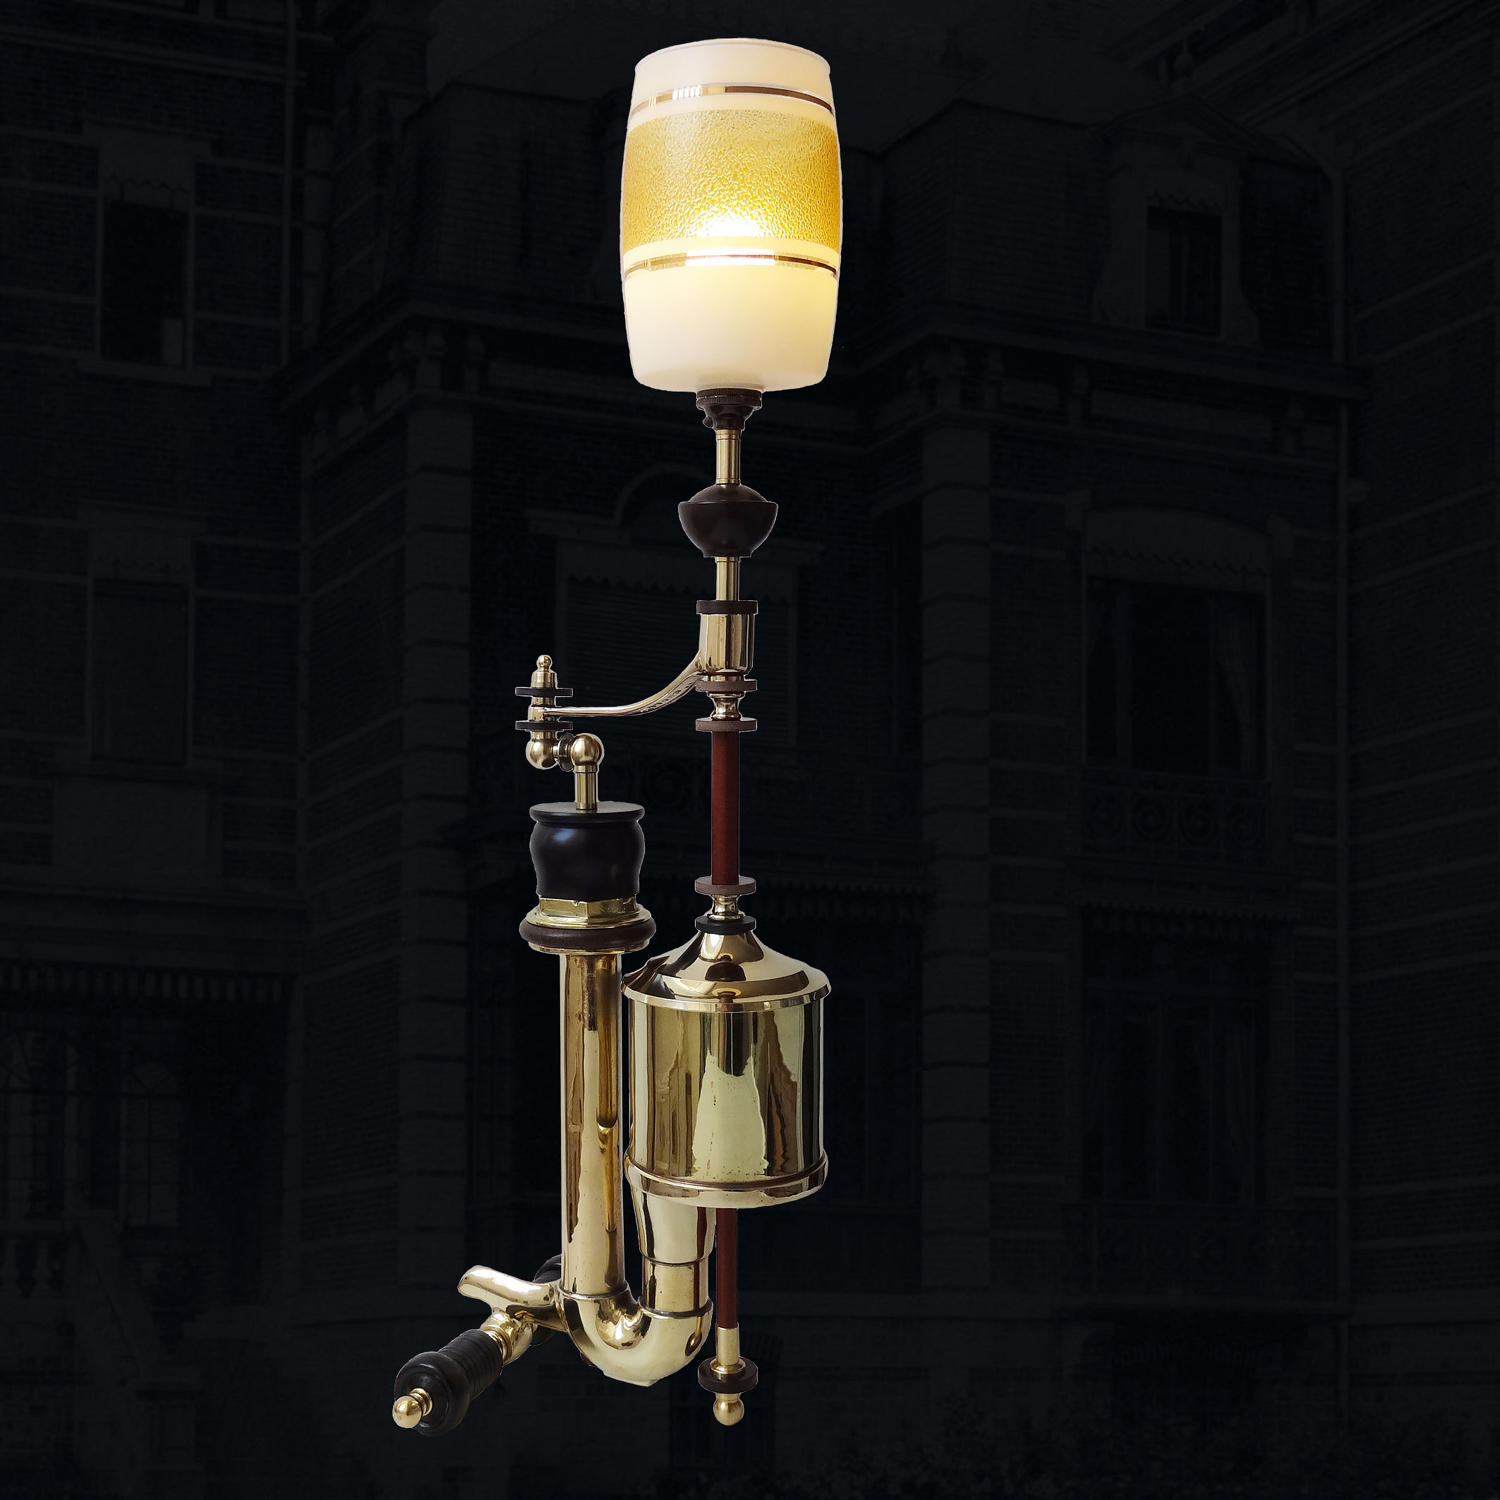 Unique artist-designed lamp - Convexo Concave - by Gilles Bourlet